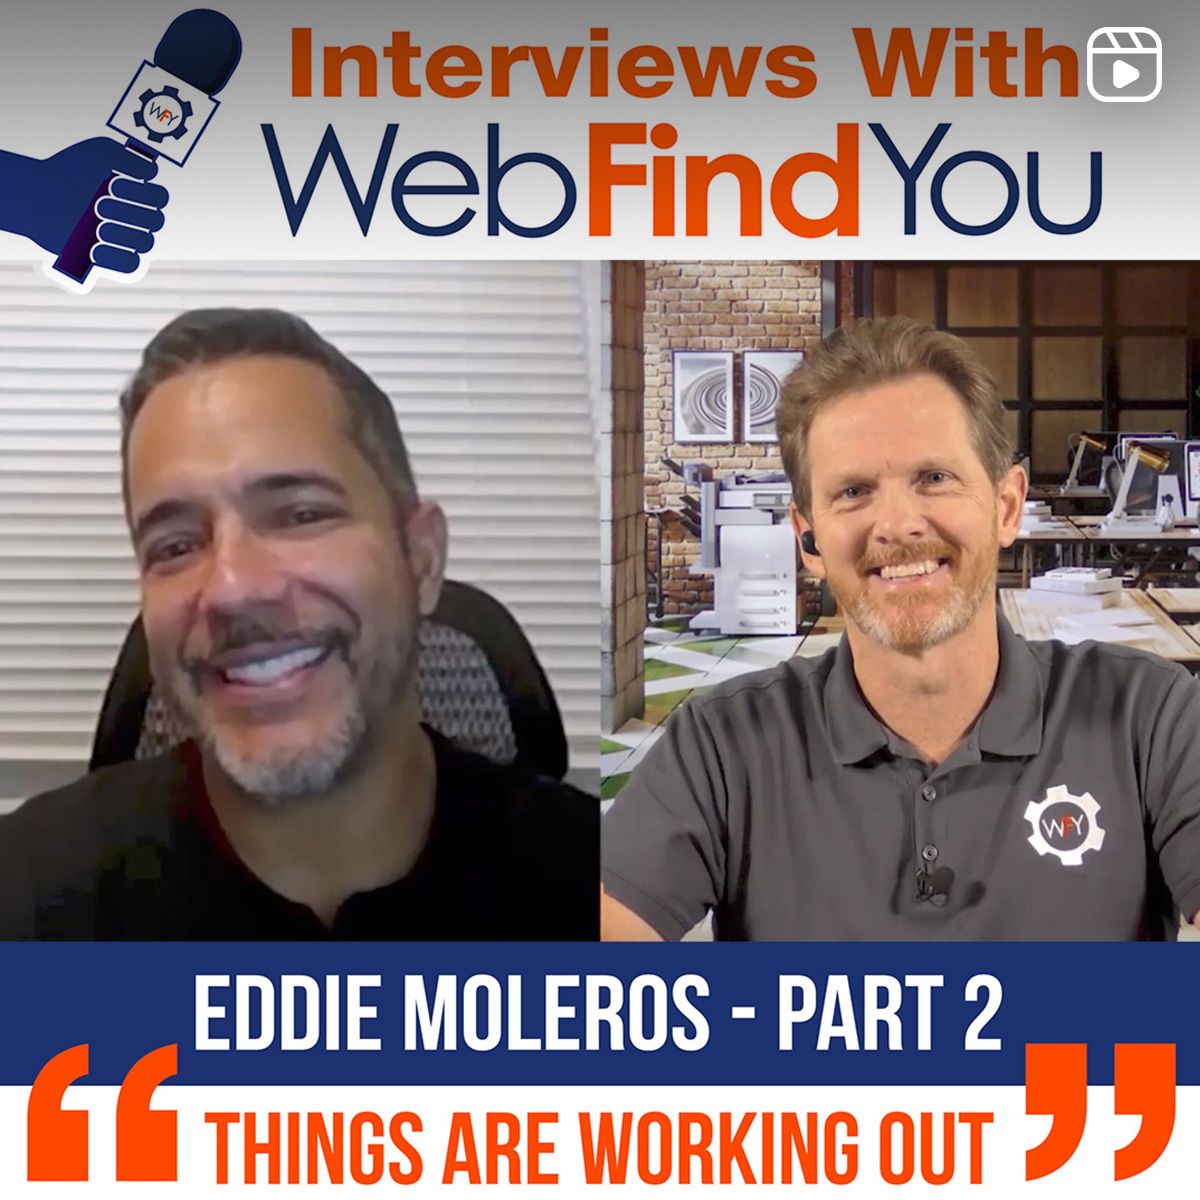 Eddie's Interview